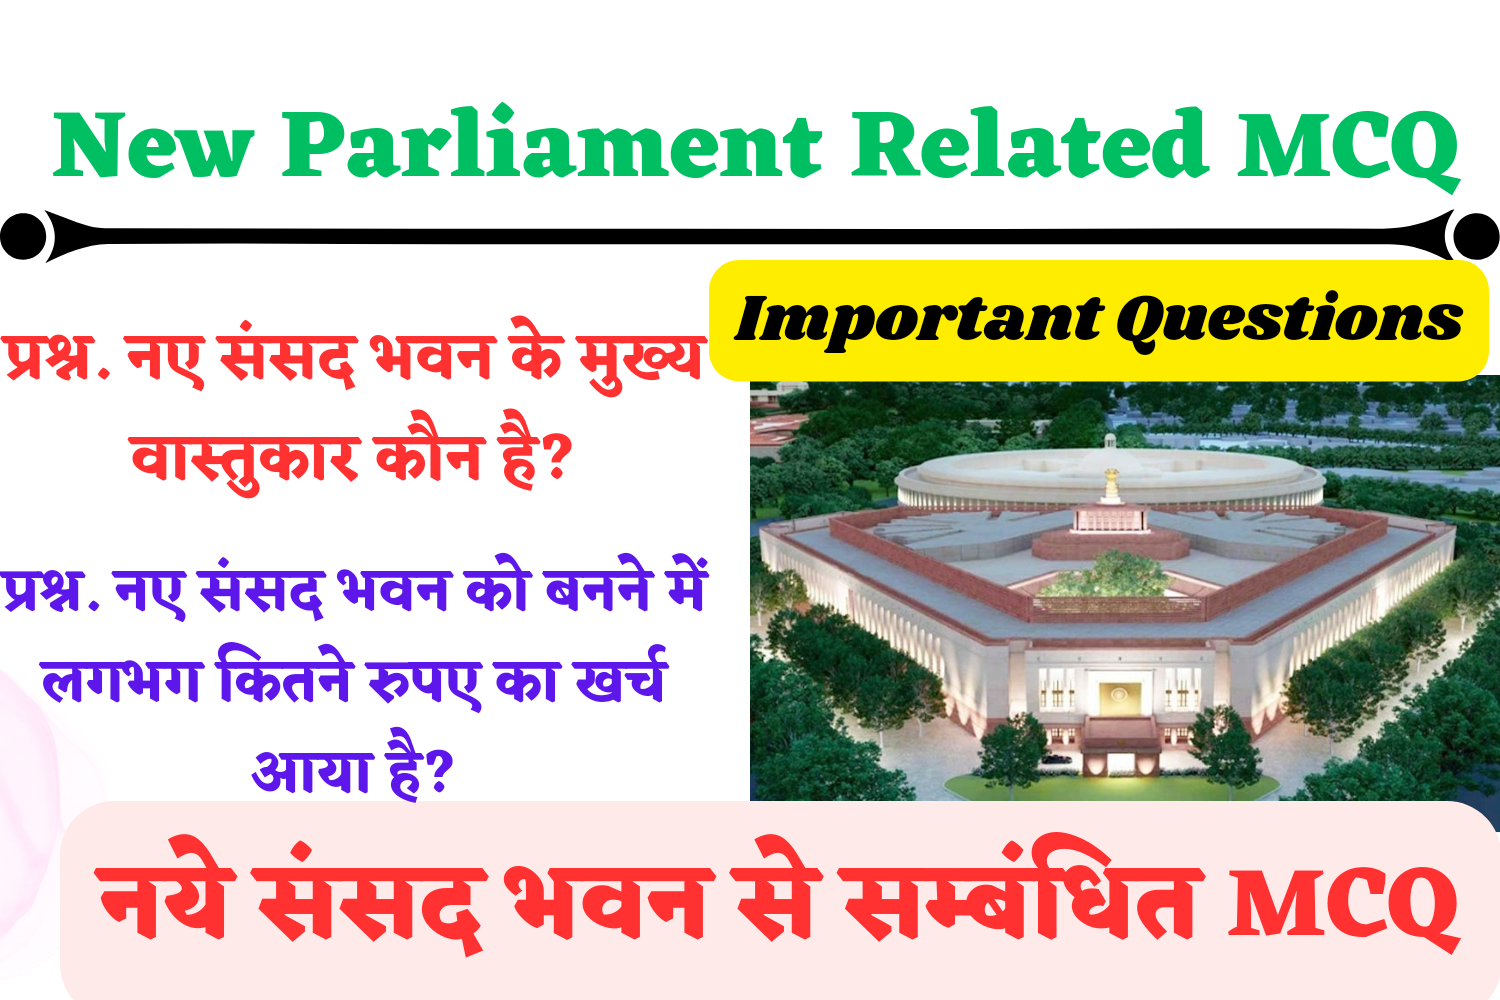 New Parliament Related Questions : नई संसद भवन से सम्बंधित महत्वपूर्ण प्रश्न